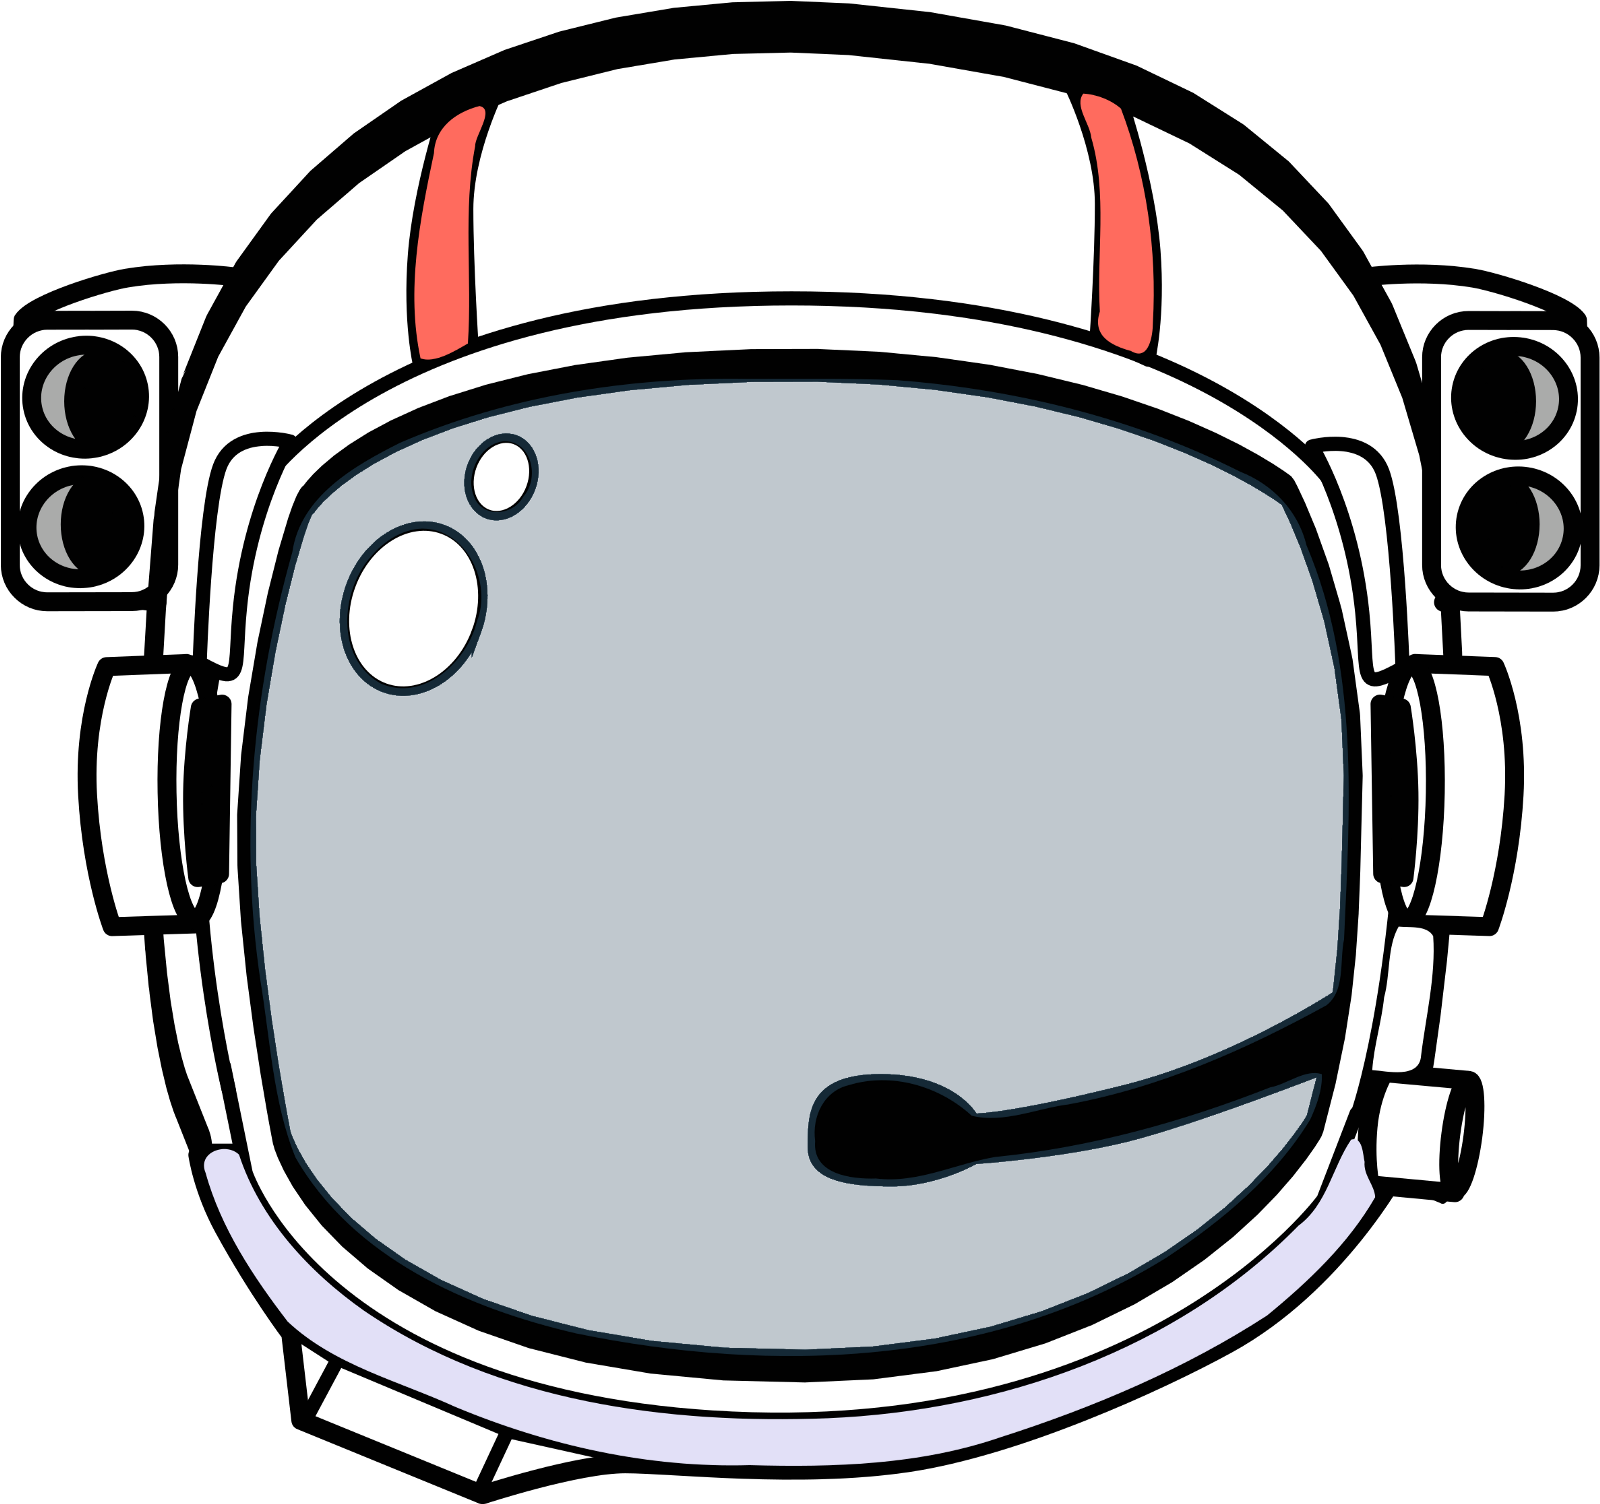 Astronaut Helmet Free PNG Image